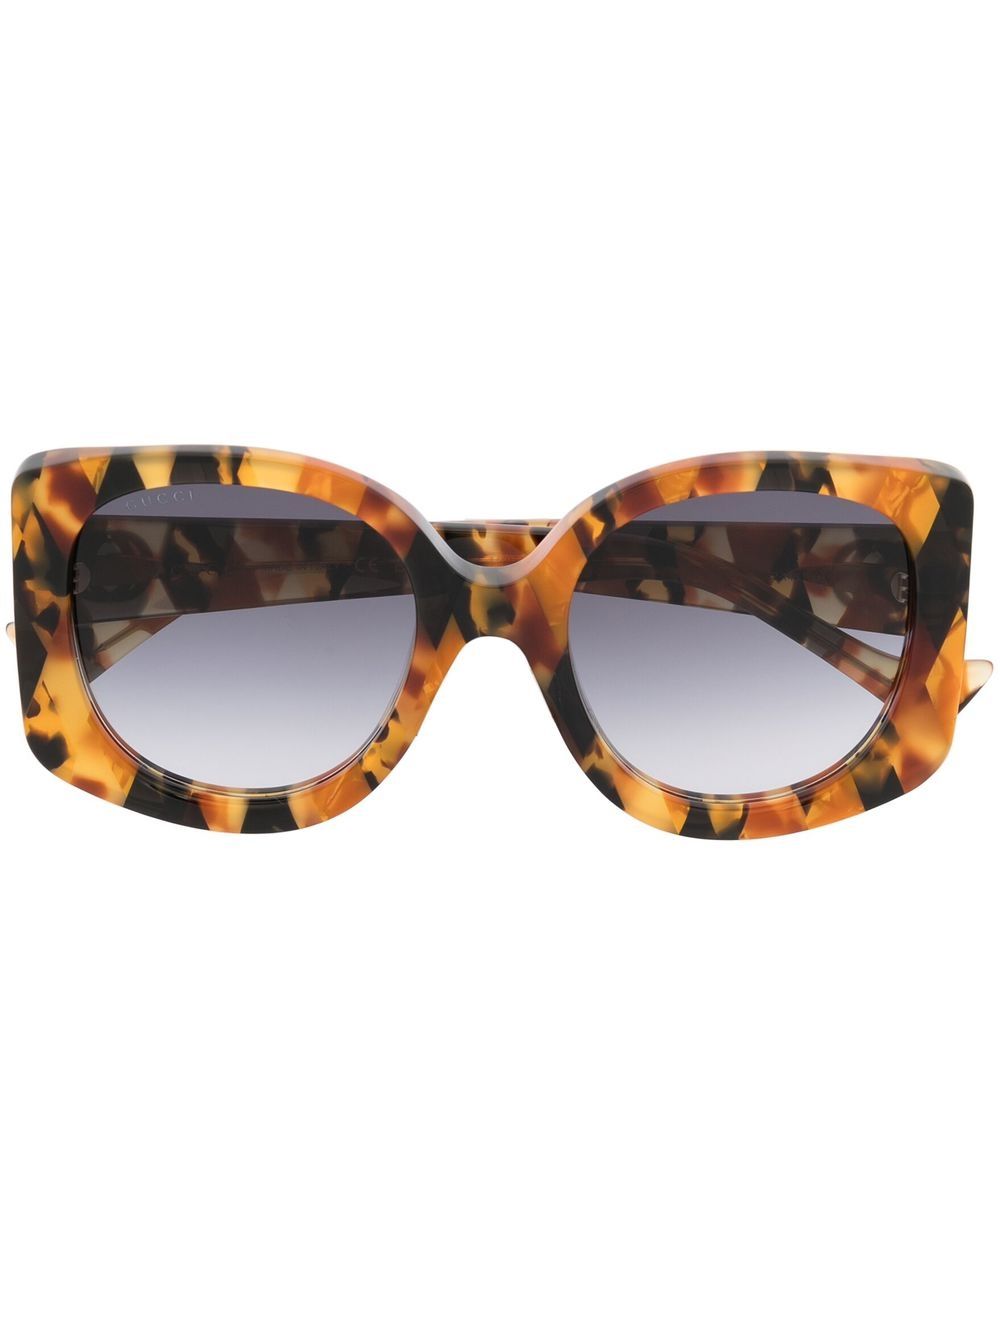 Gucci GG1257S Women's Sunglasses